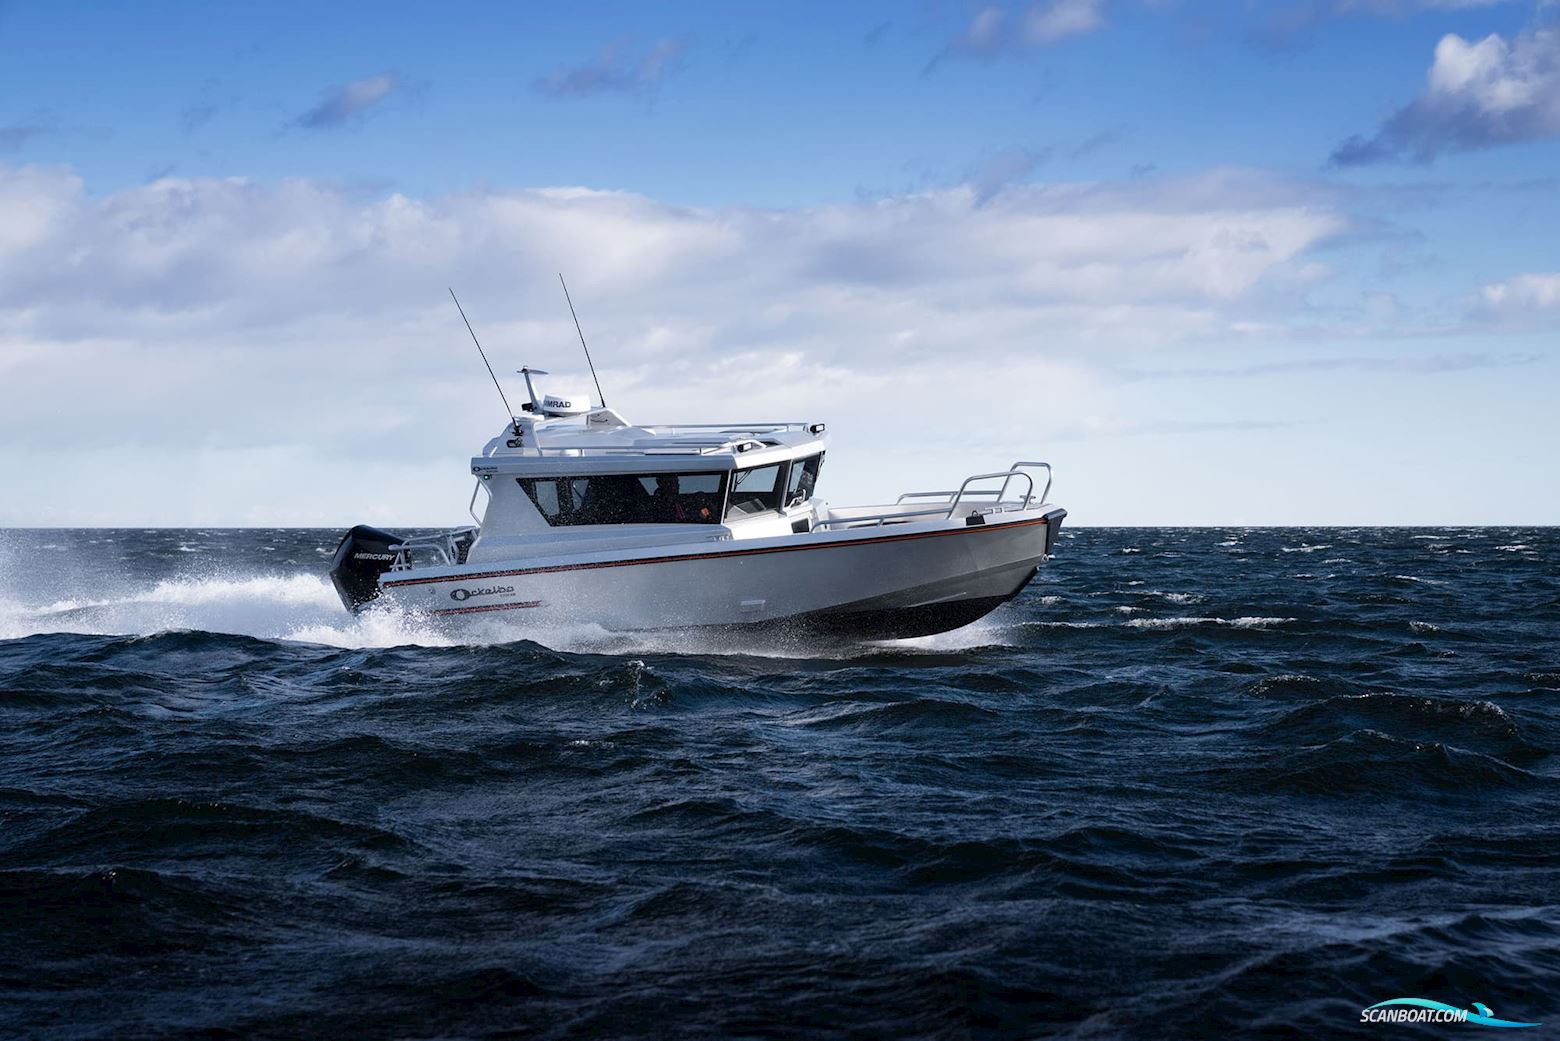 OCKELBO B25CAB Motorbåt 2023, med Mercury 300 hk motor, Sverige